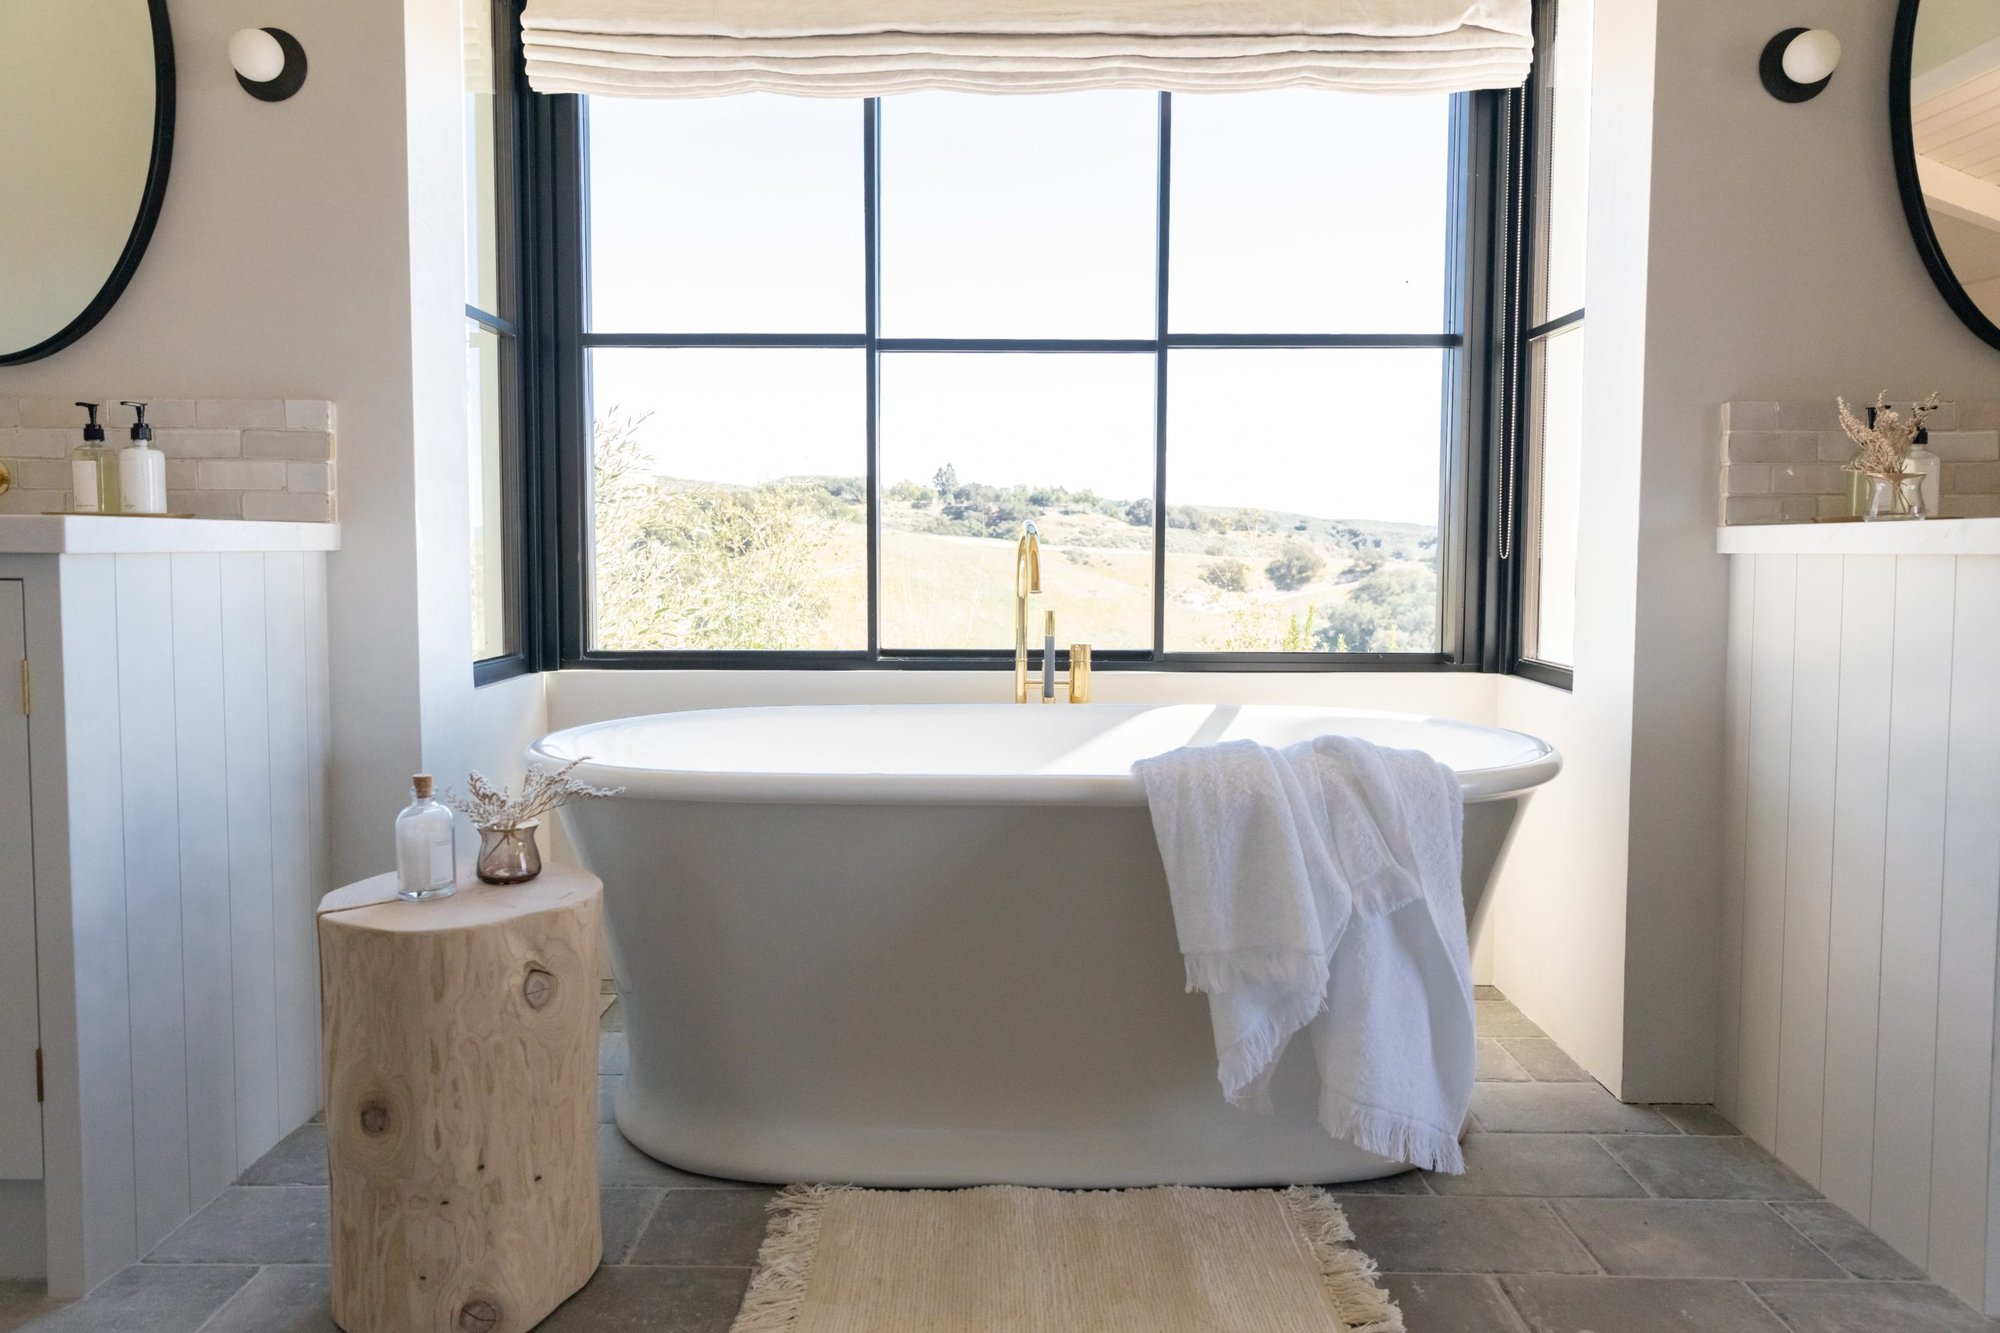 Luxury bathtub with VOLA tub filler